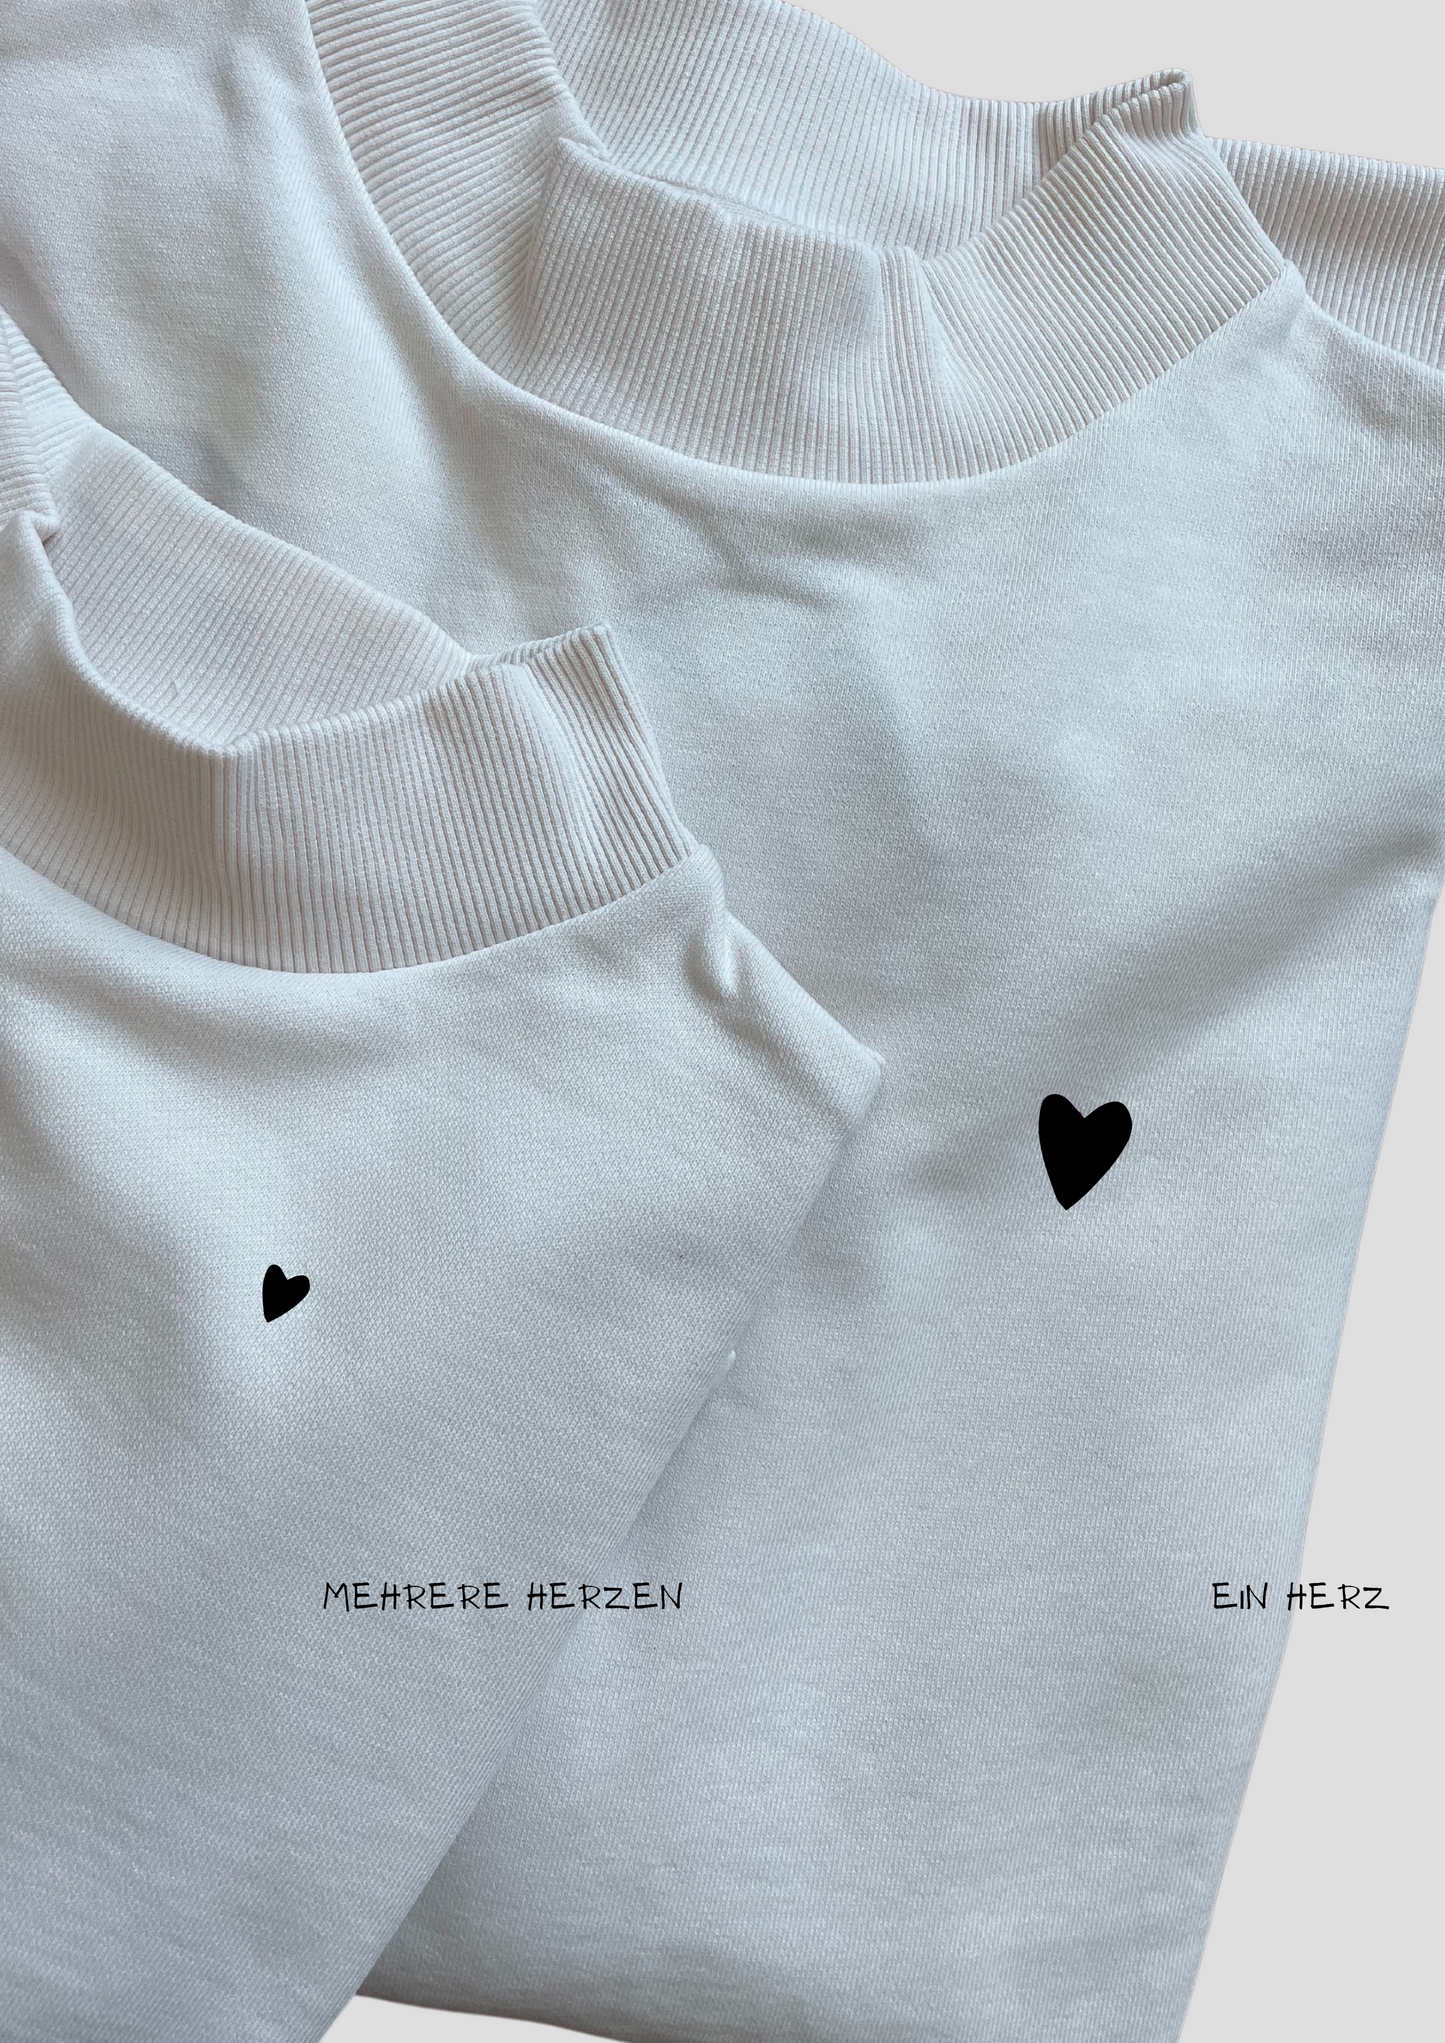 BLACK HEART - Sweatshirt mit Herzchen